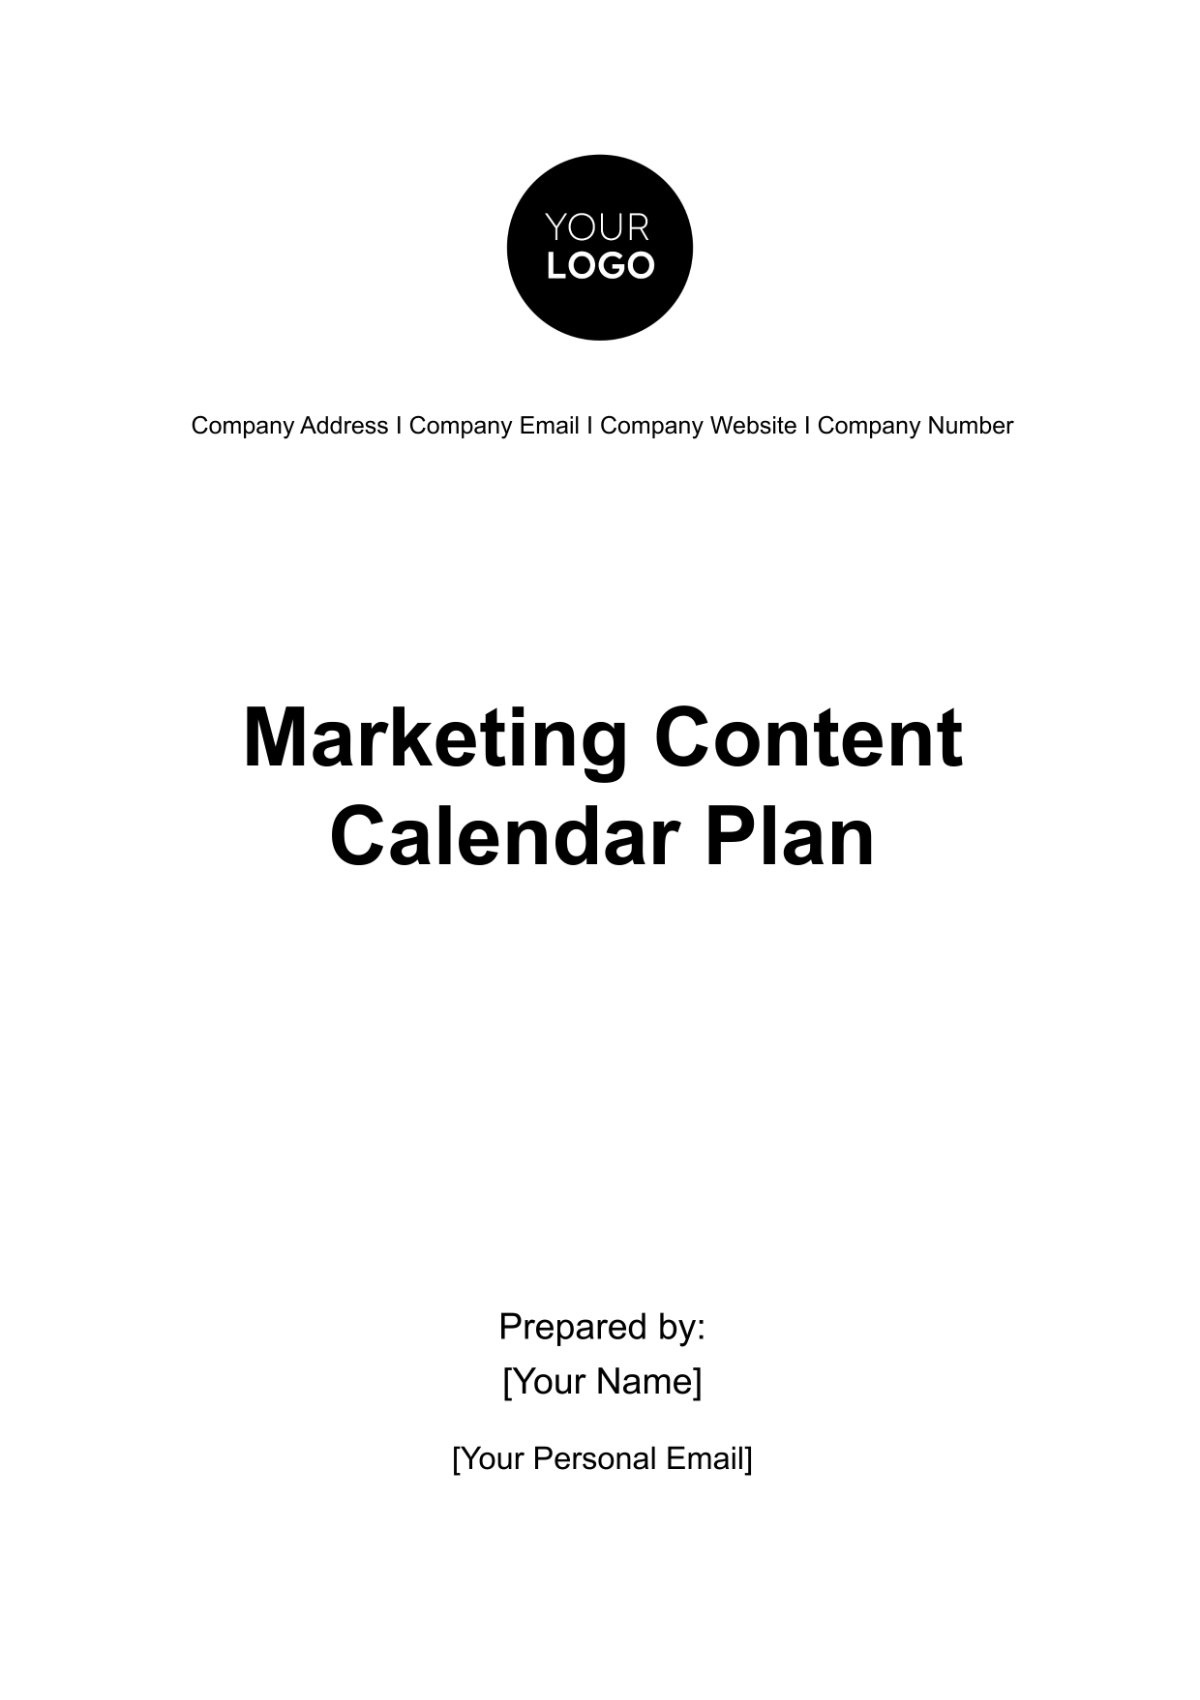 Marketing Content Calendar Plan Template